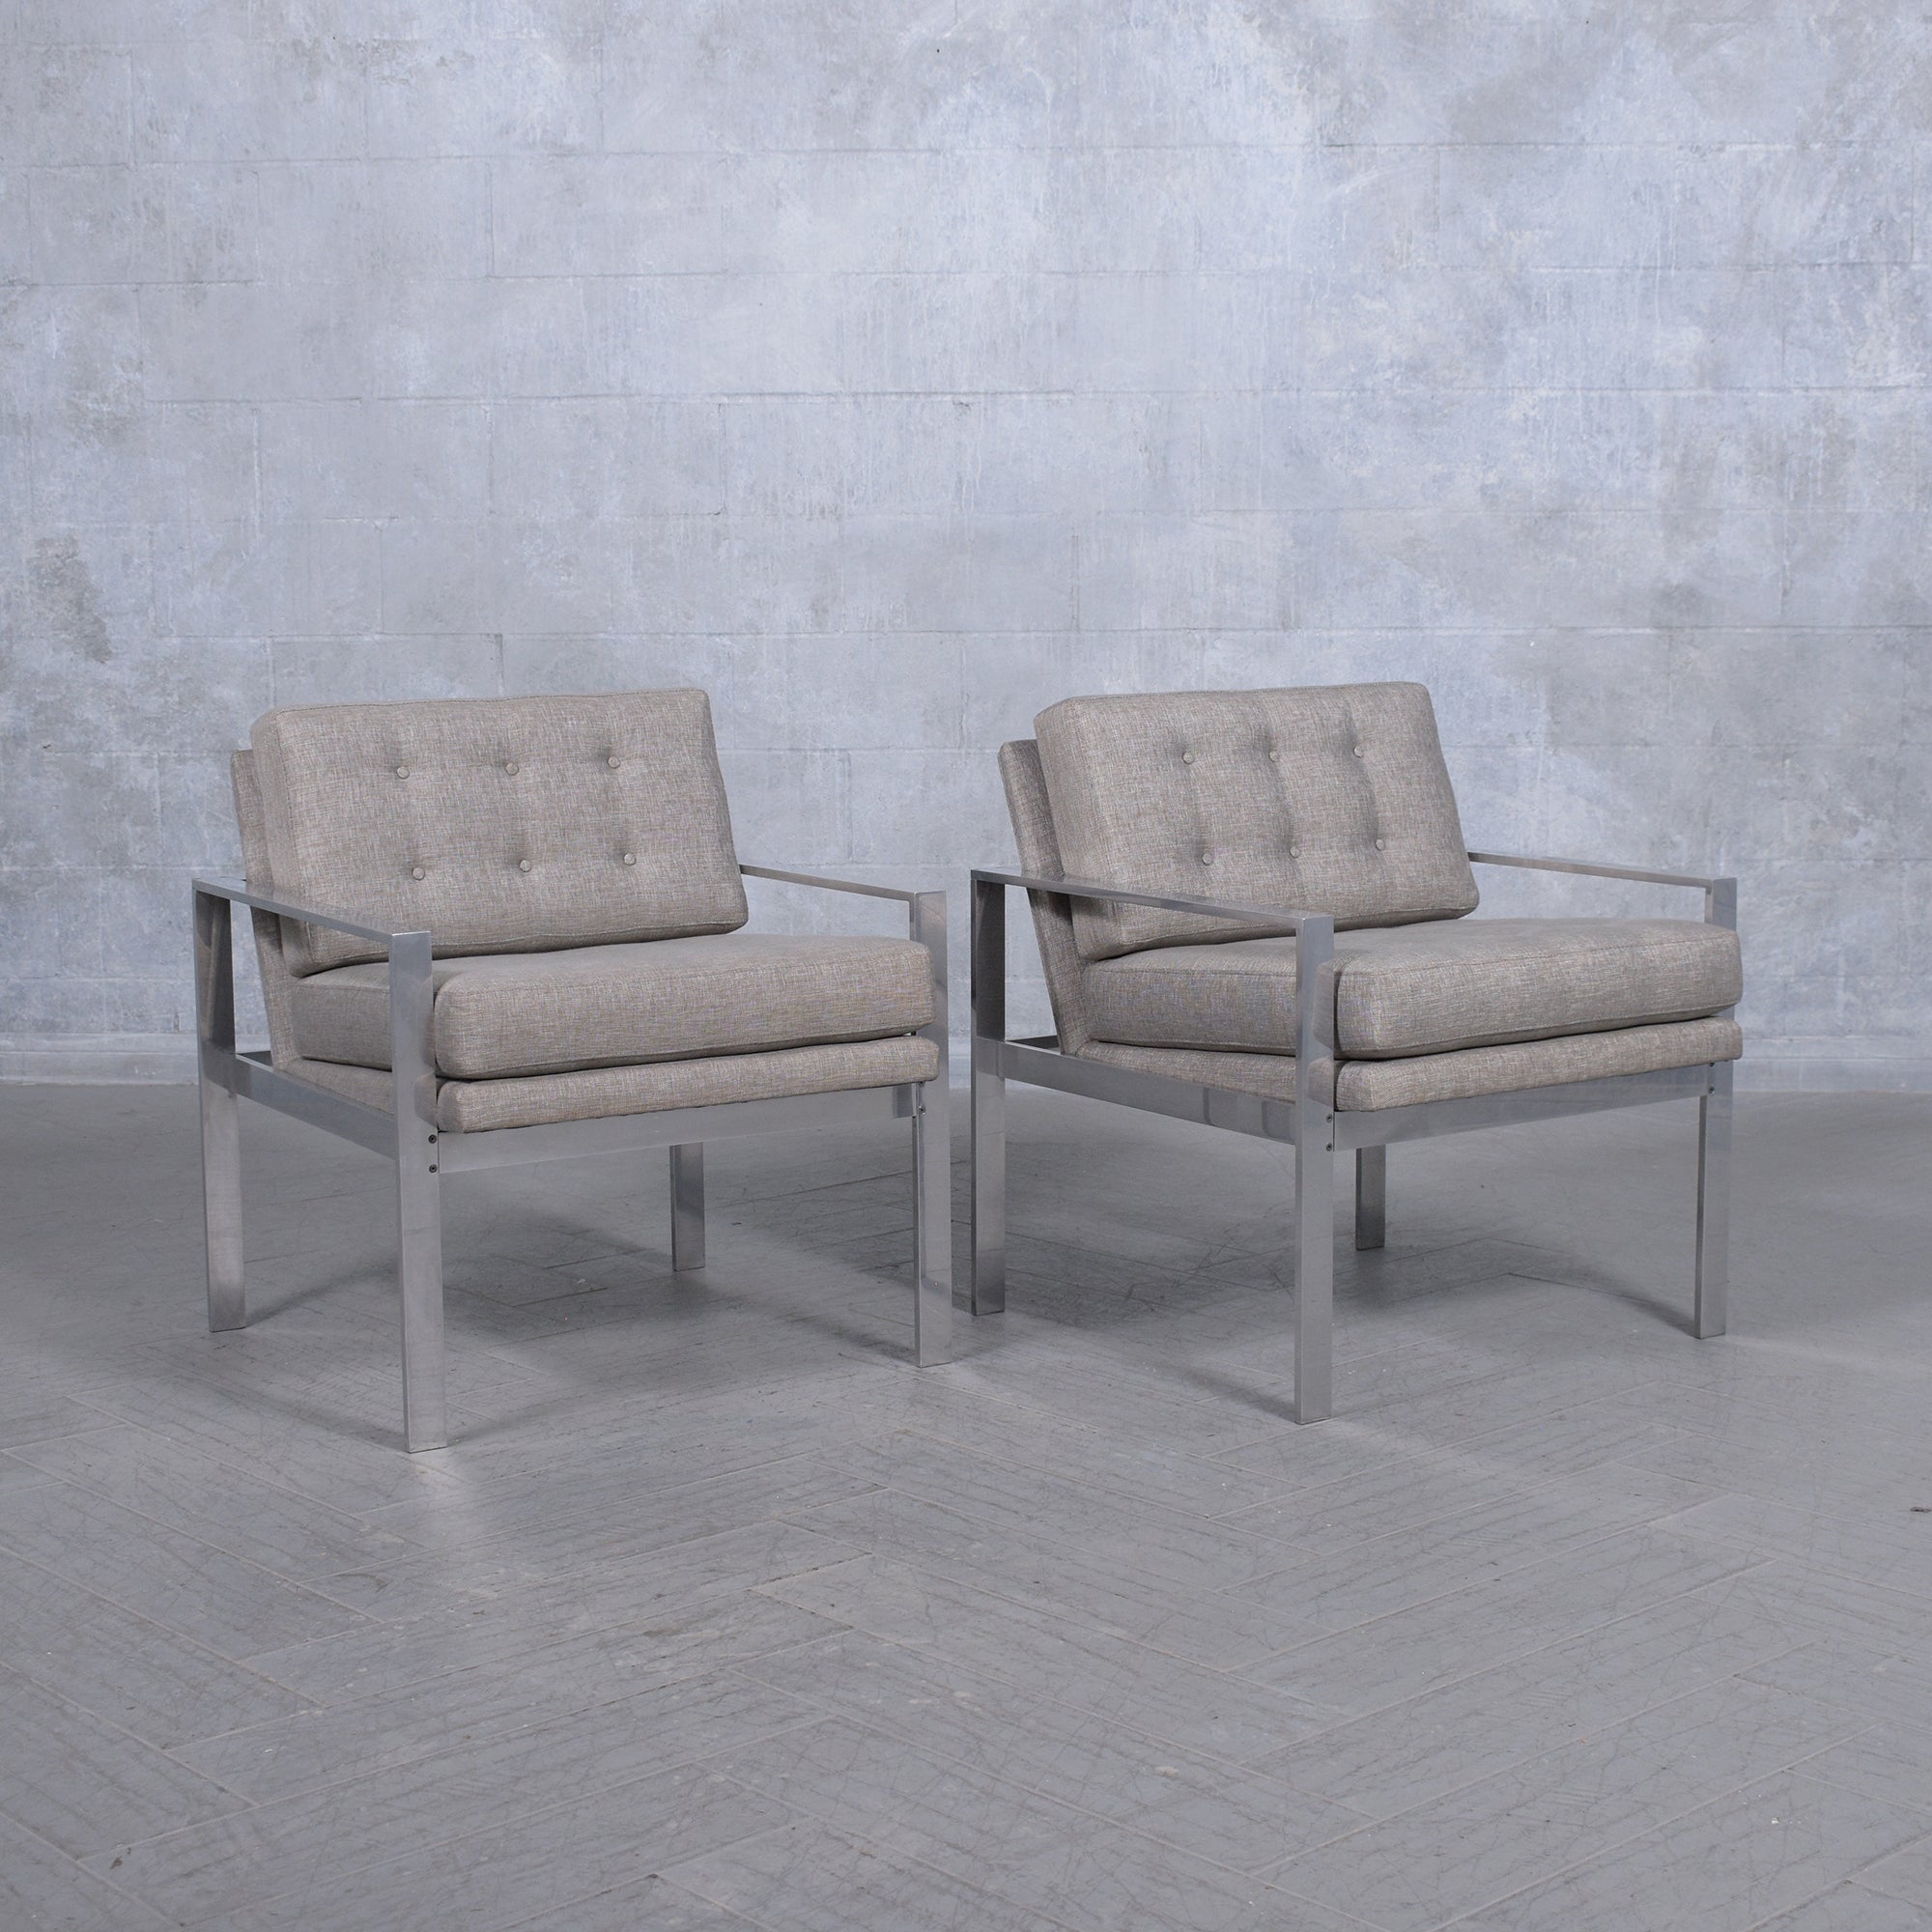 Plongez dans l'élégance intemporelle du design moderne du milieu du siècle avec notre paire de chaises longues Milo Baughman méticuleusement restaurées. Ces pièces emblématiques, célébrées pour leur style classique et leur confort inégalé, ont été